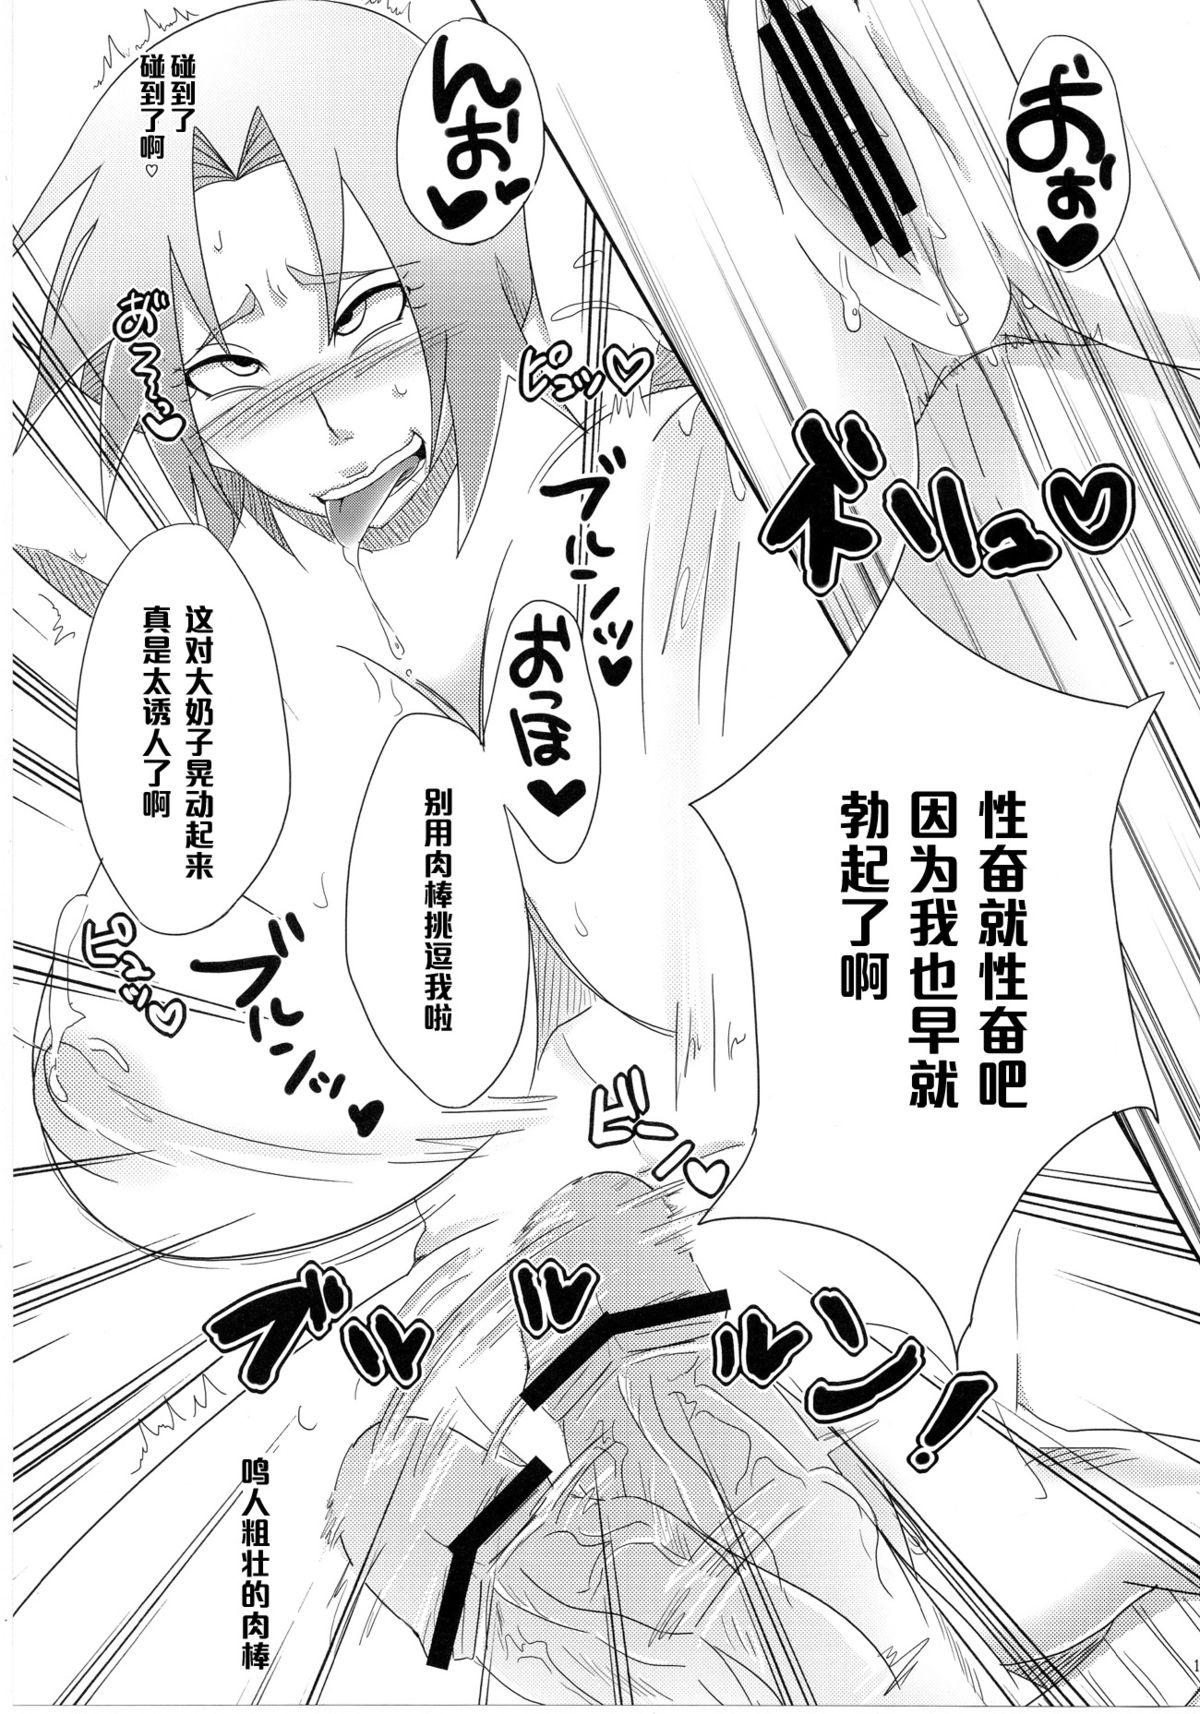 Boy Sato Ichiban no! - Naruto Girl Girl - Page 10